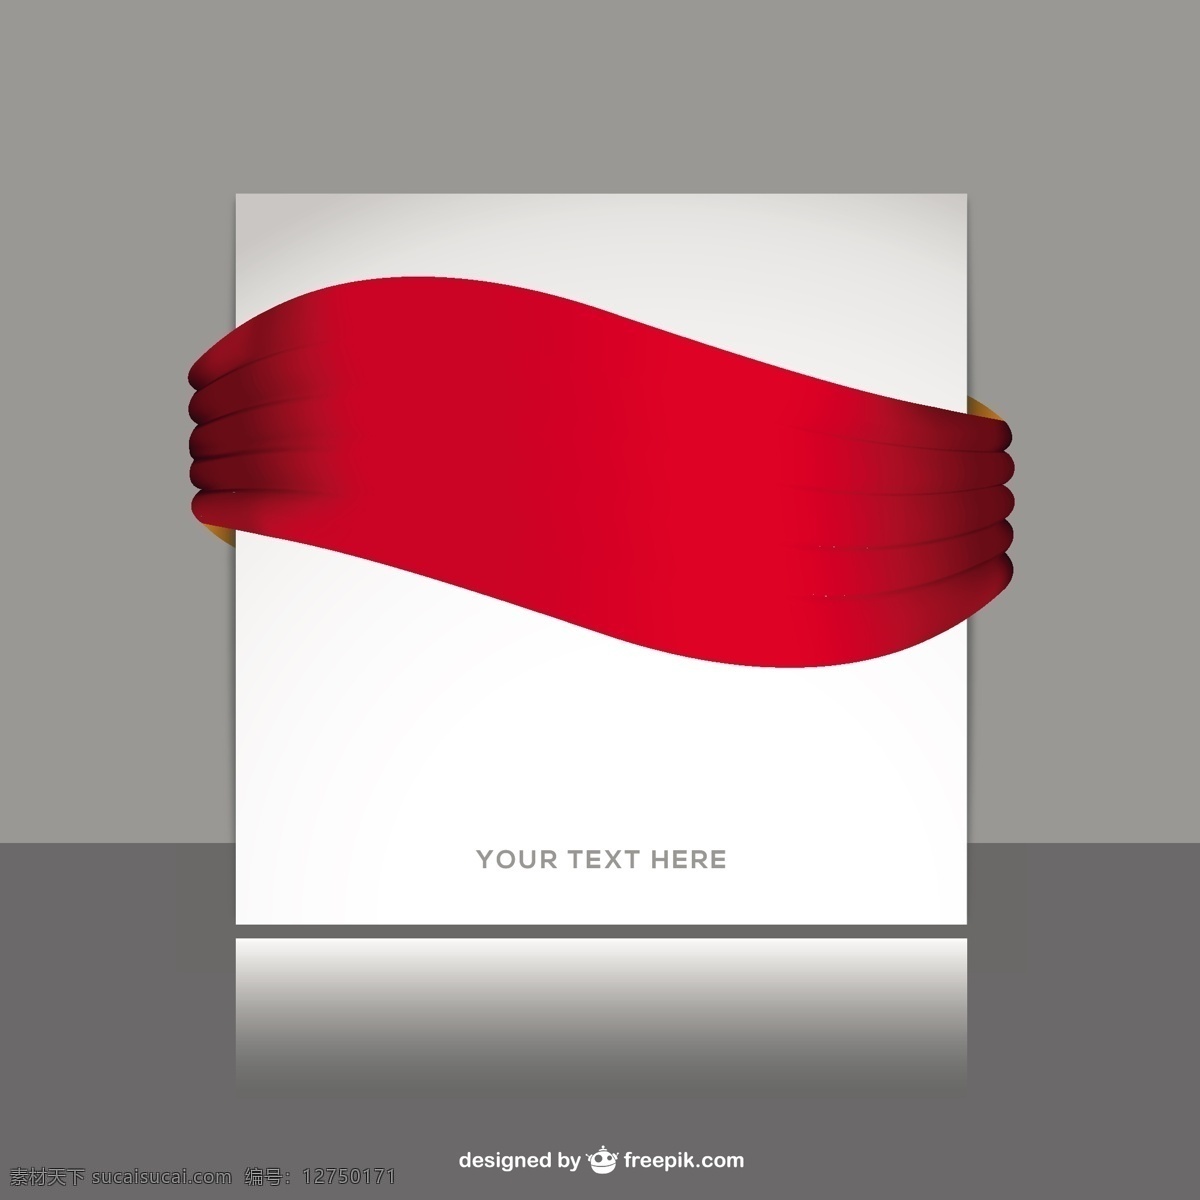 红丝带样机 带 海报 模型 模板 红 壁纸 图形 布局 平面设计 模拟 元素 现代 插画 海报模板 背景 红丝带 灰色